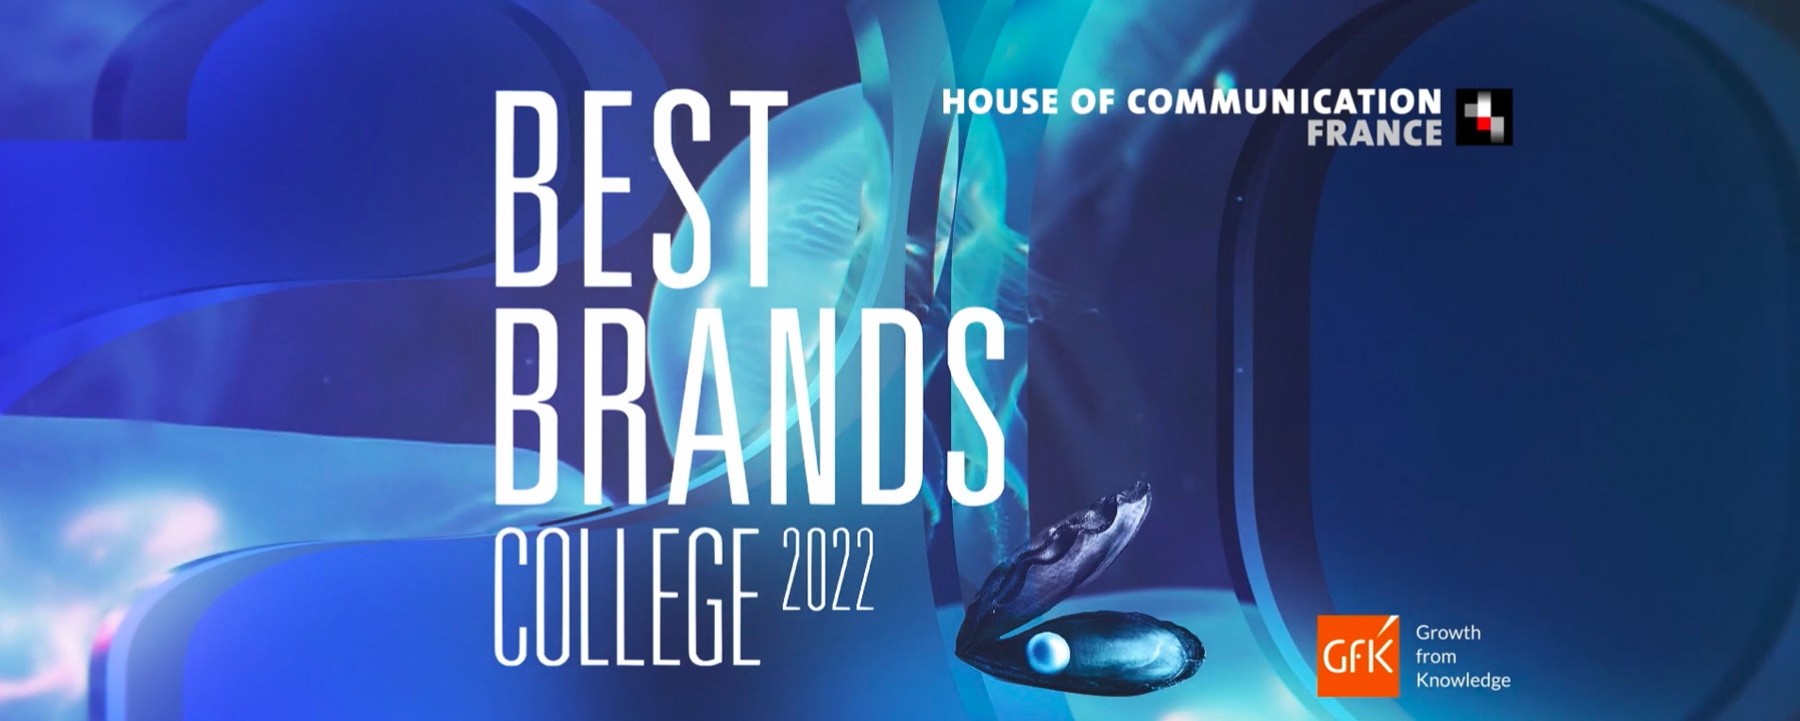 Best Brand College 2022